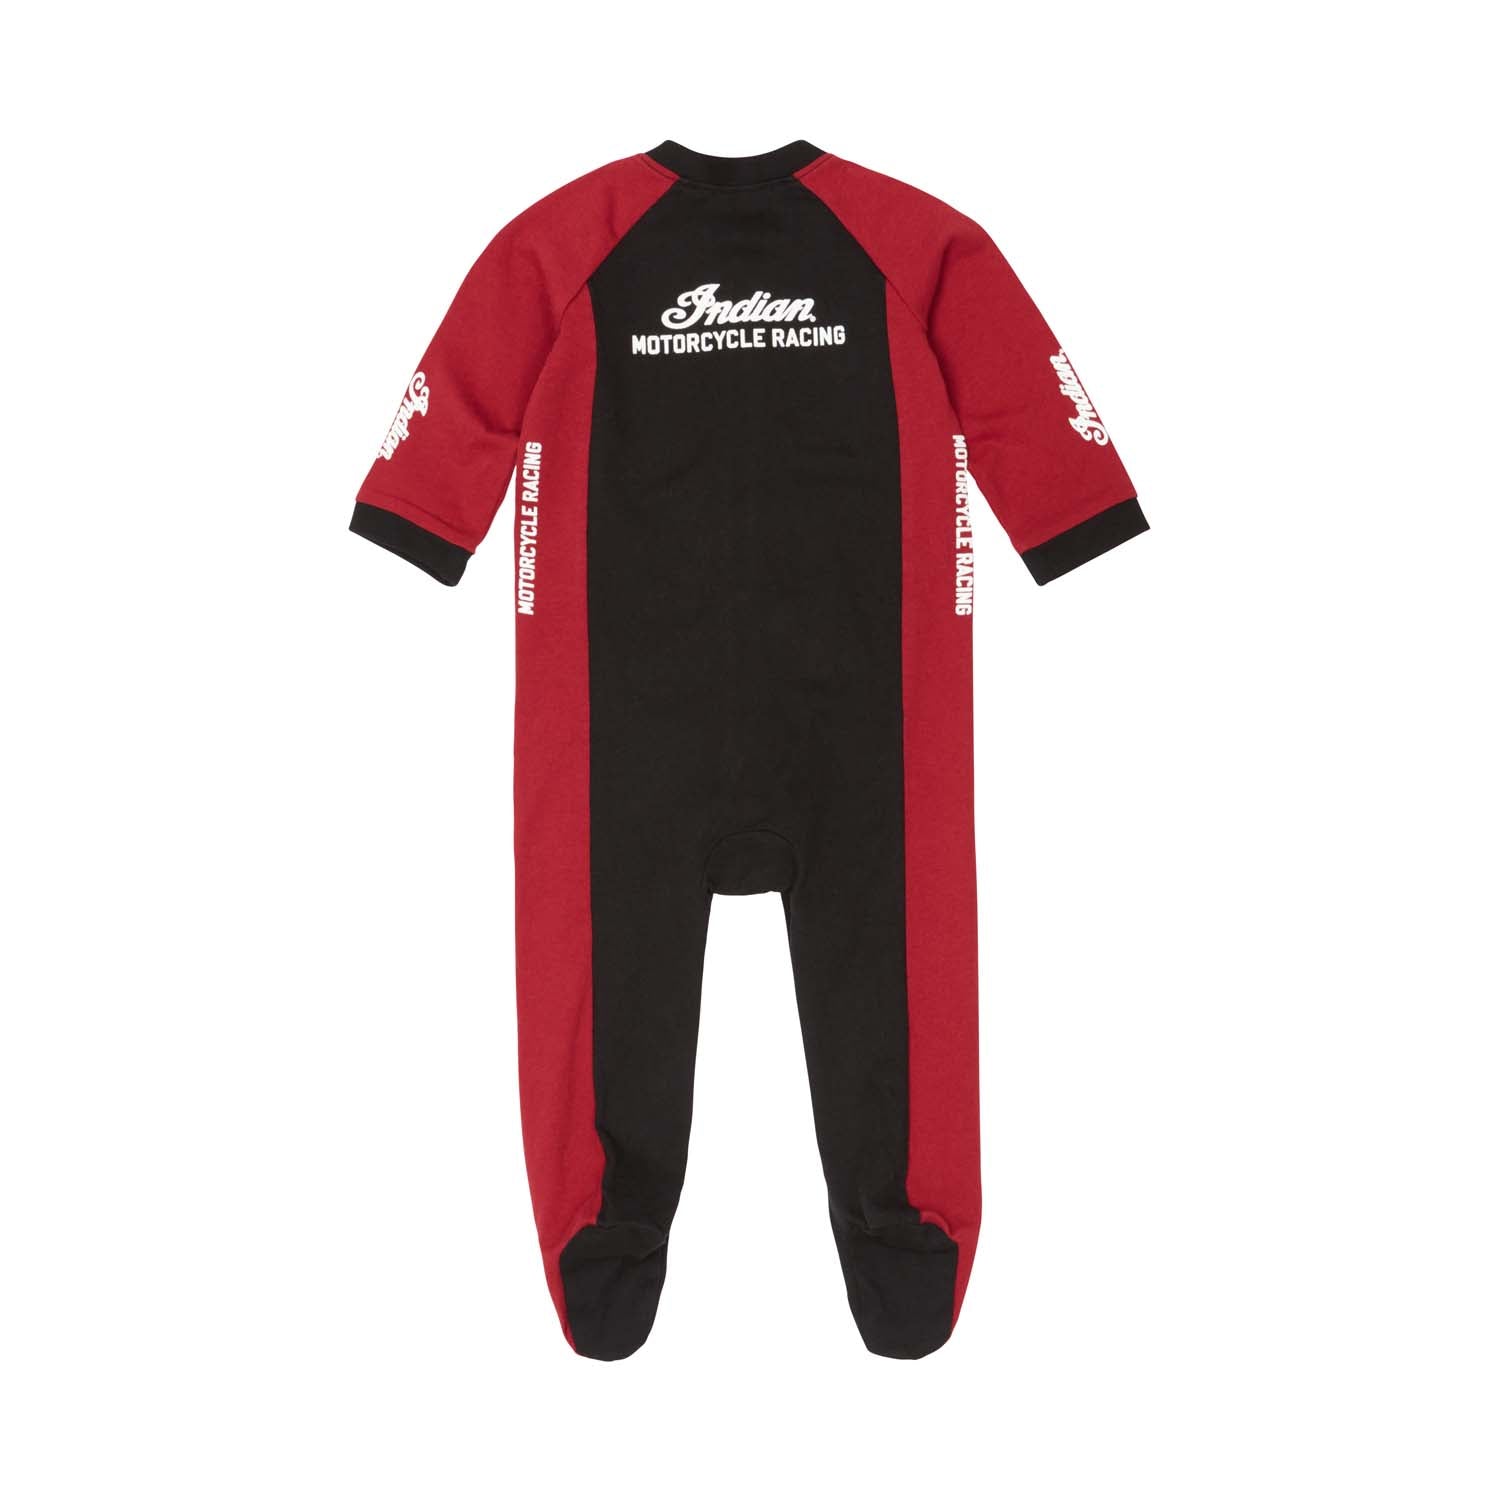 Kid's Racing Sleepsuit, 2 Pack